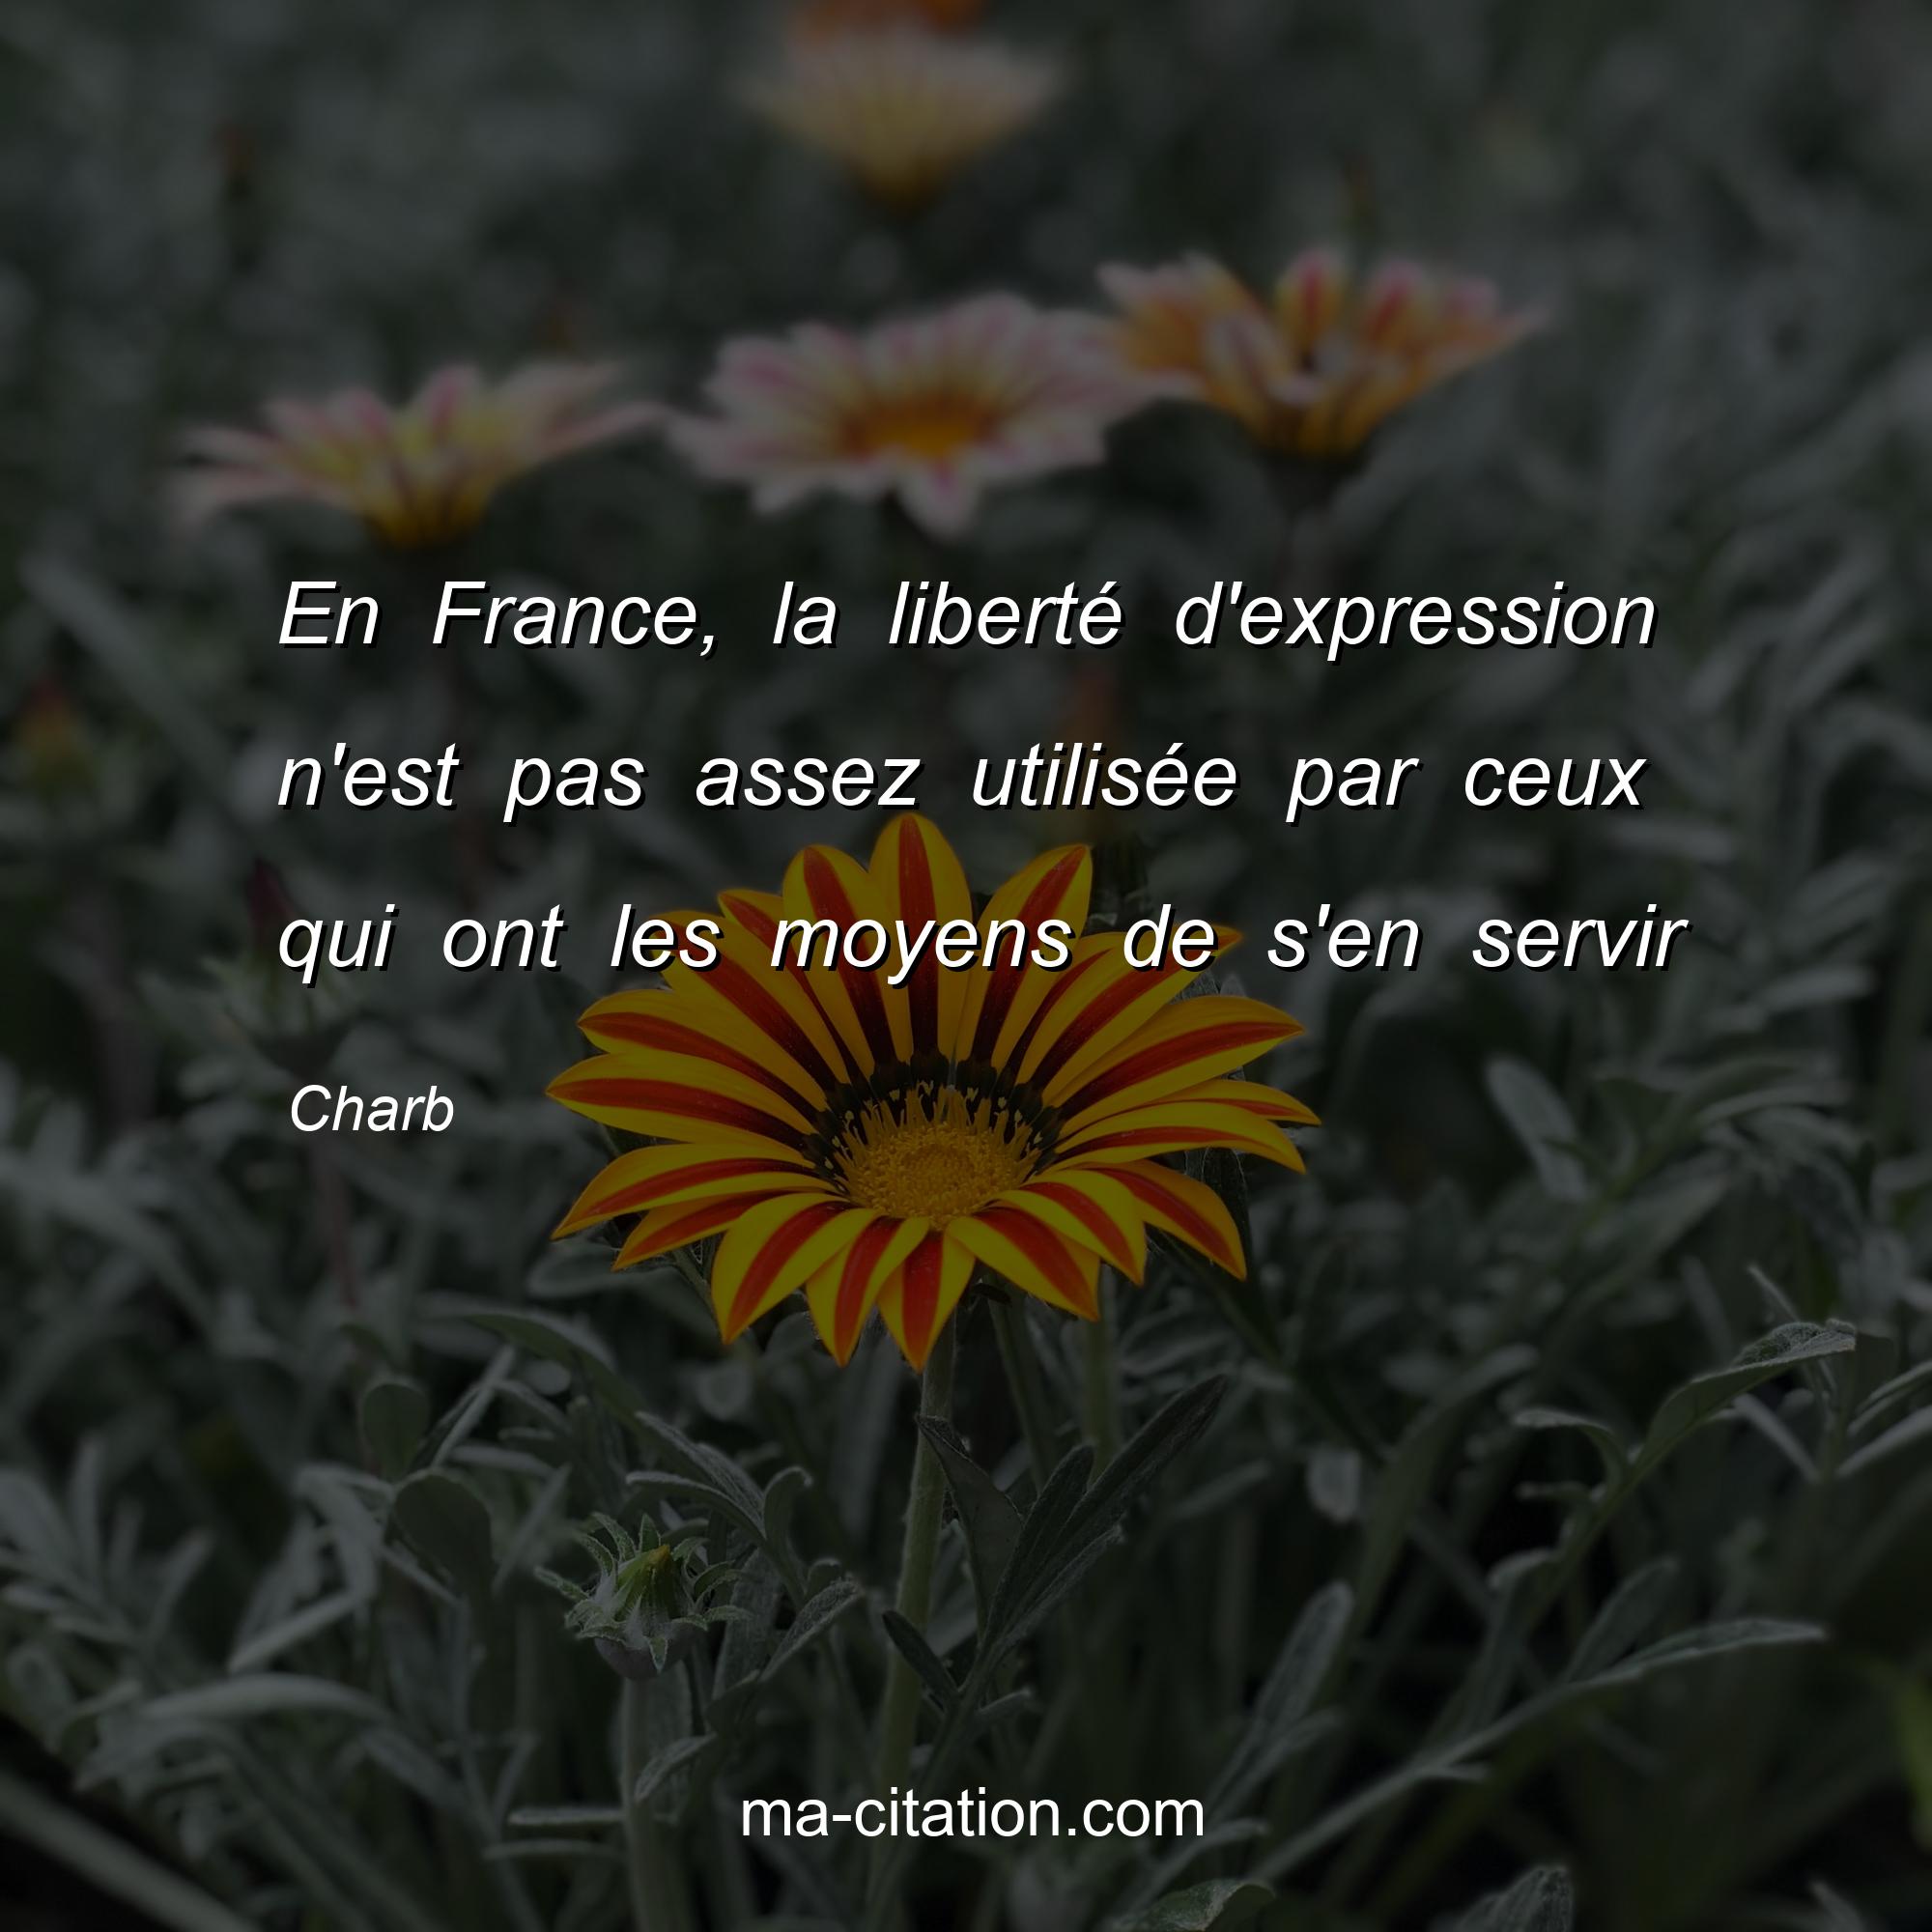 Charb : En France, la liberté d'expression n'est pas assez utilisée par ceux qui ont les moyens de s'en servir